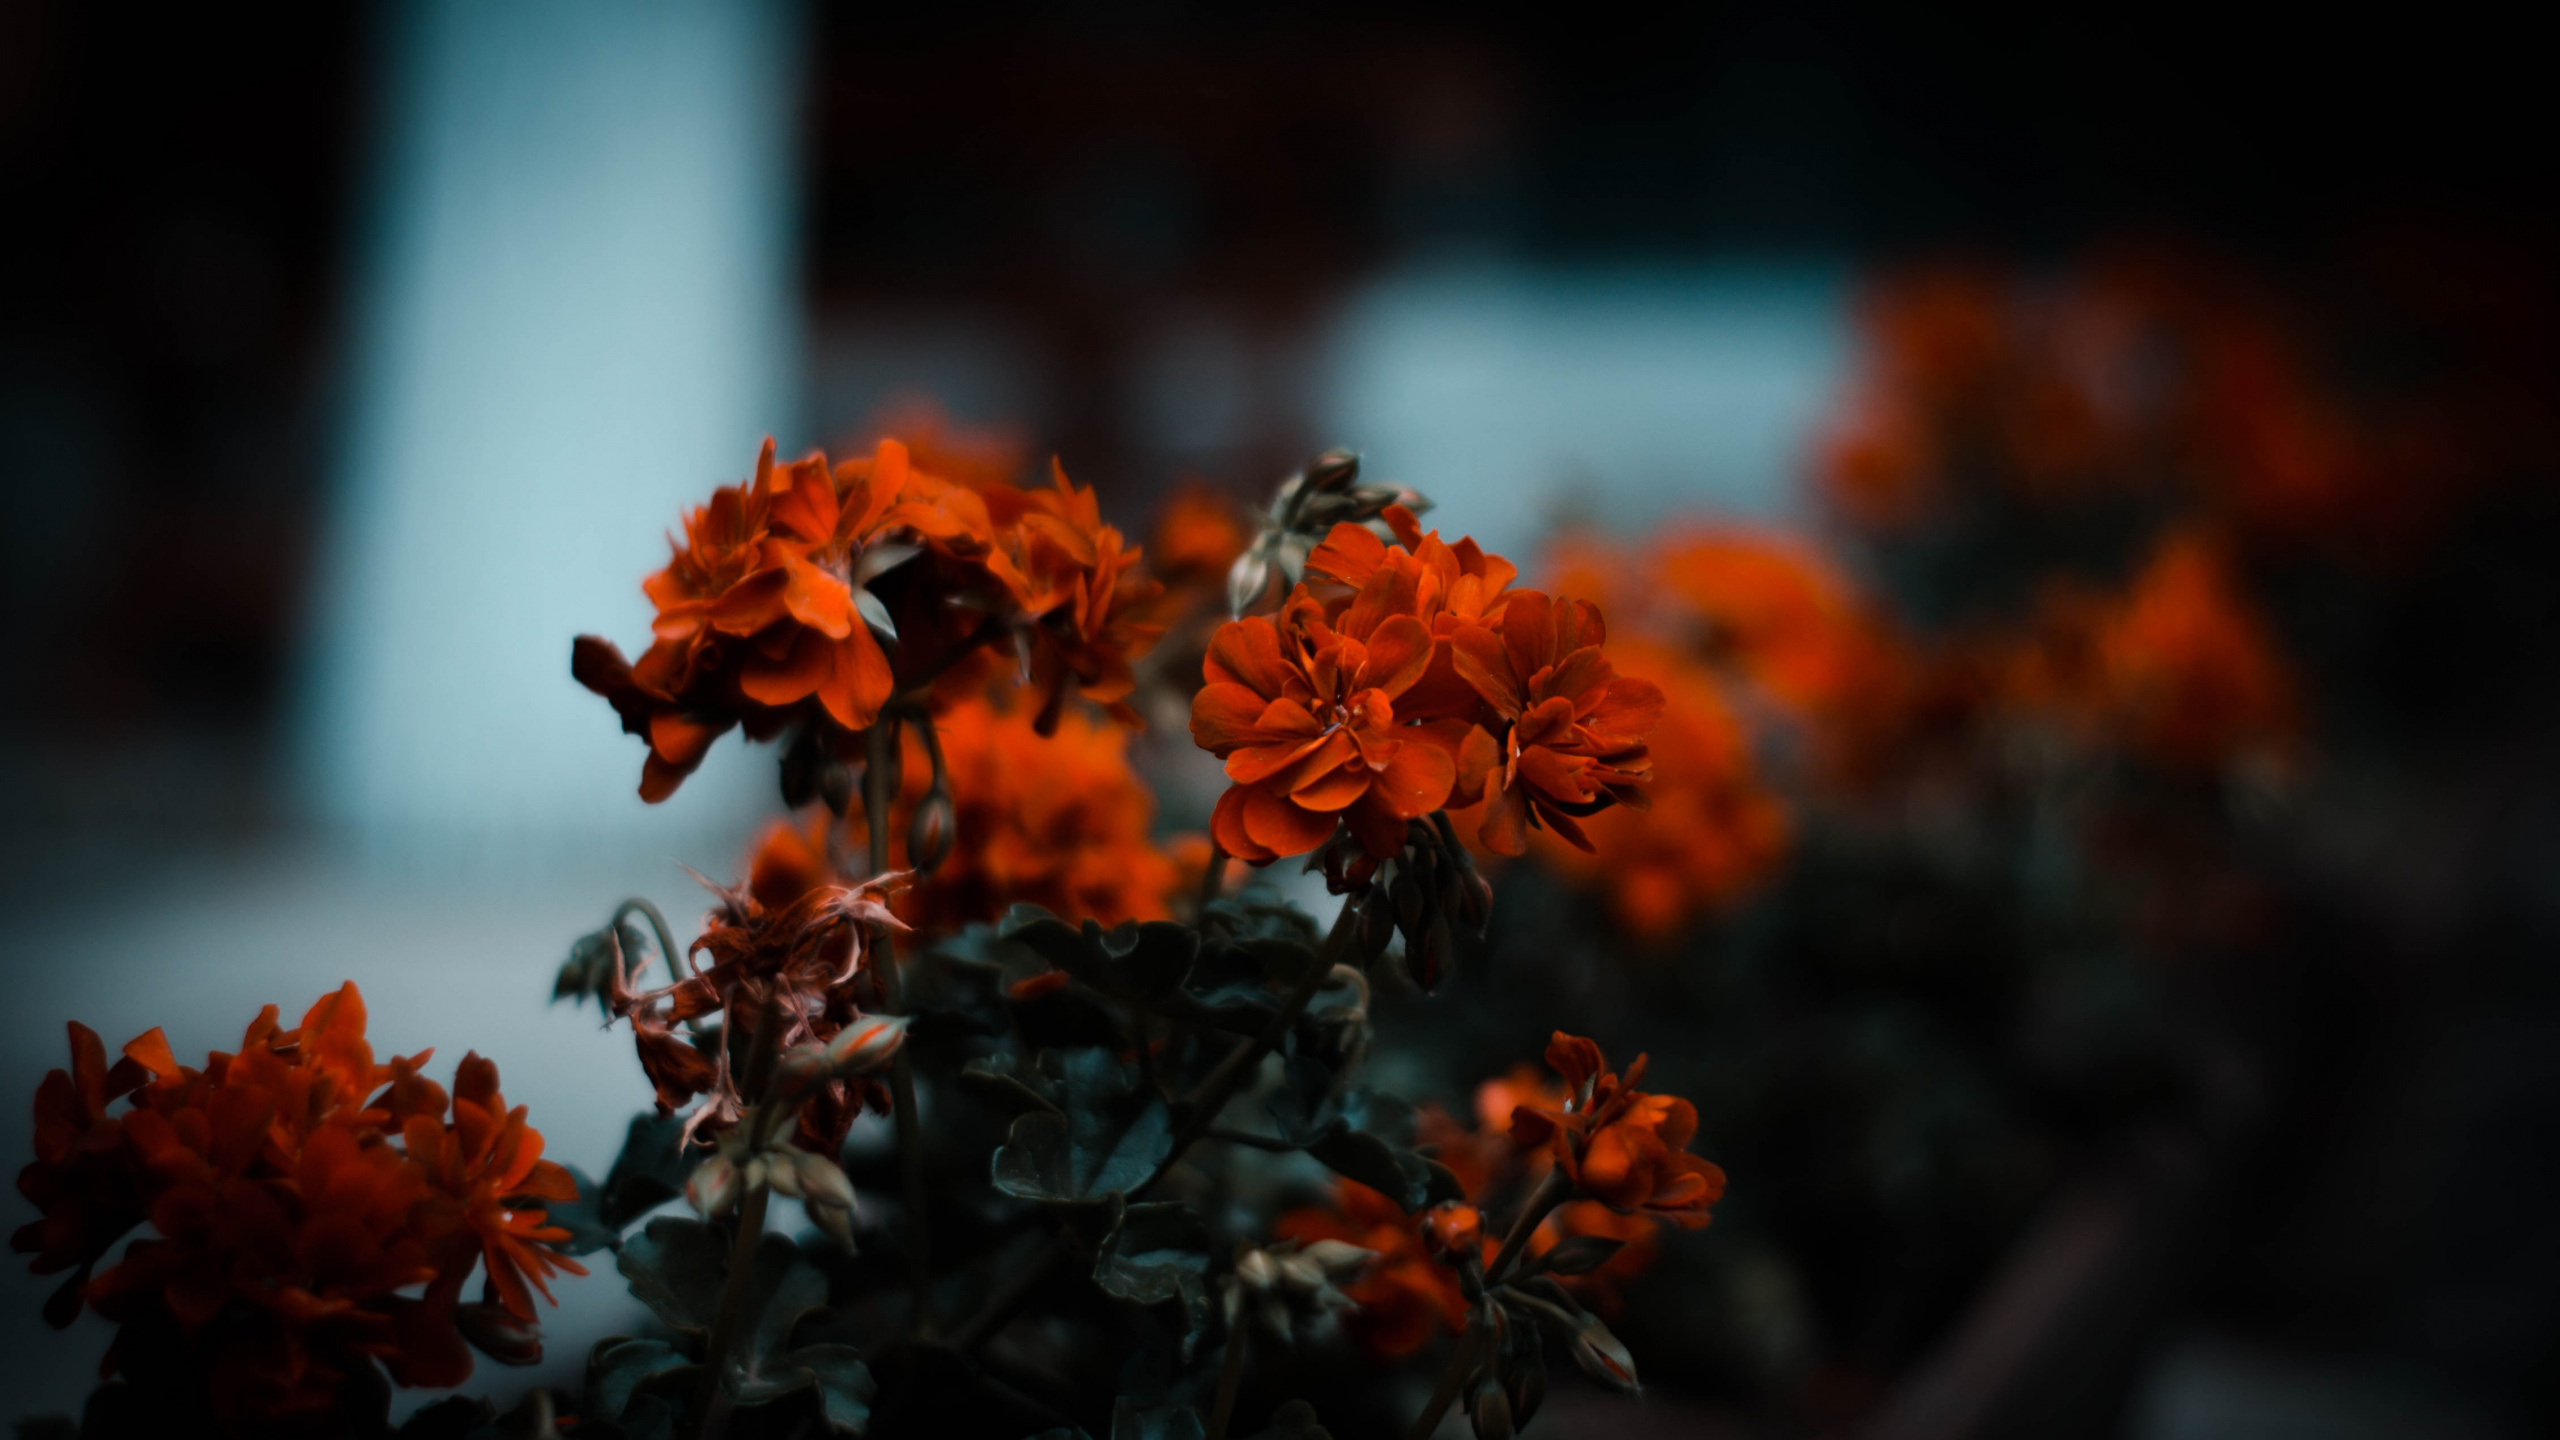 Orange Flowers in Tilt Shift Lens. Wallpaper in 2560x1440 Resolution